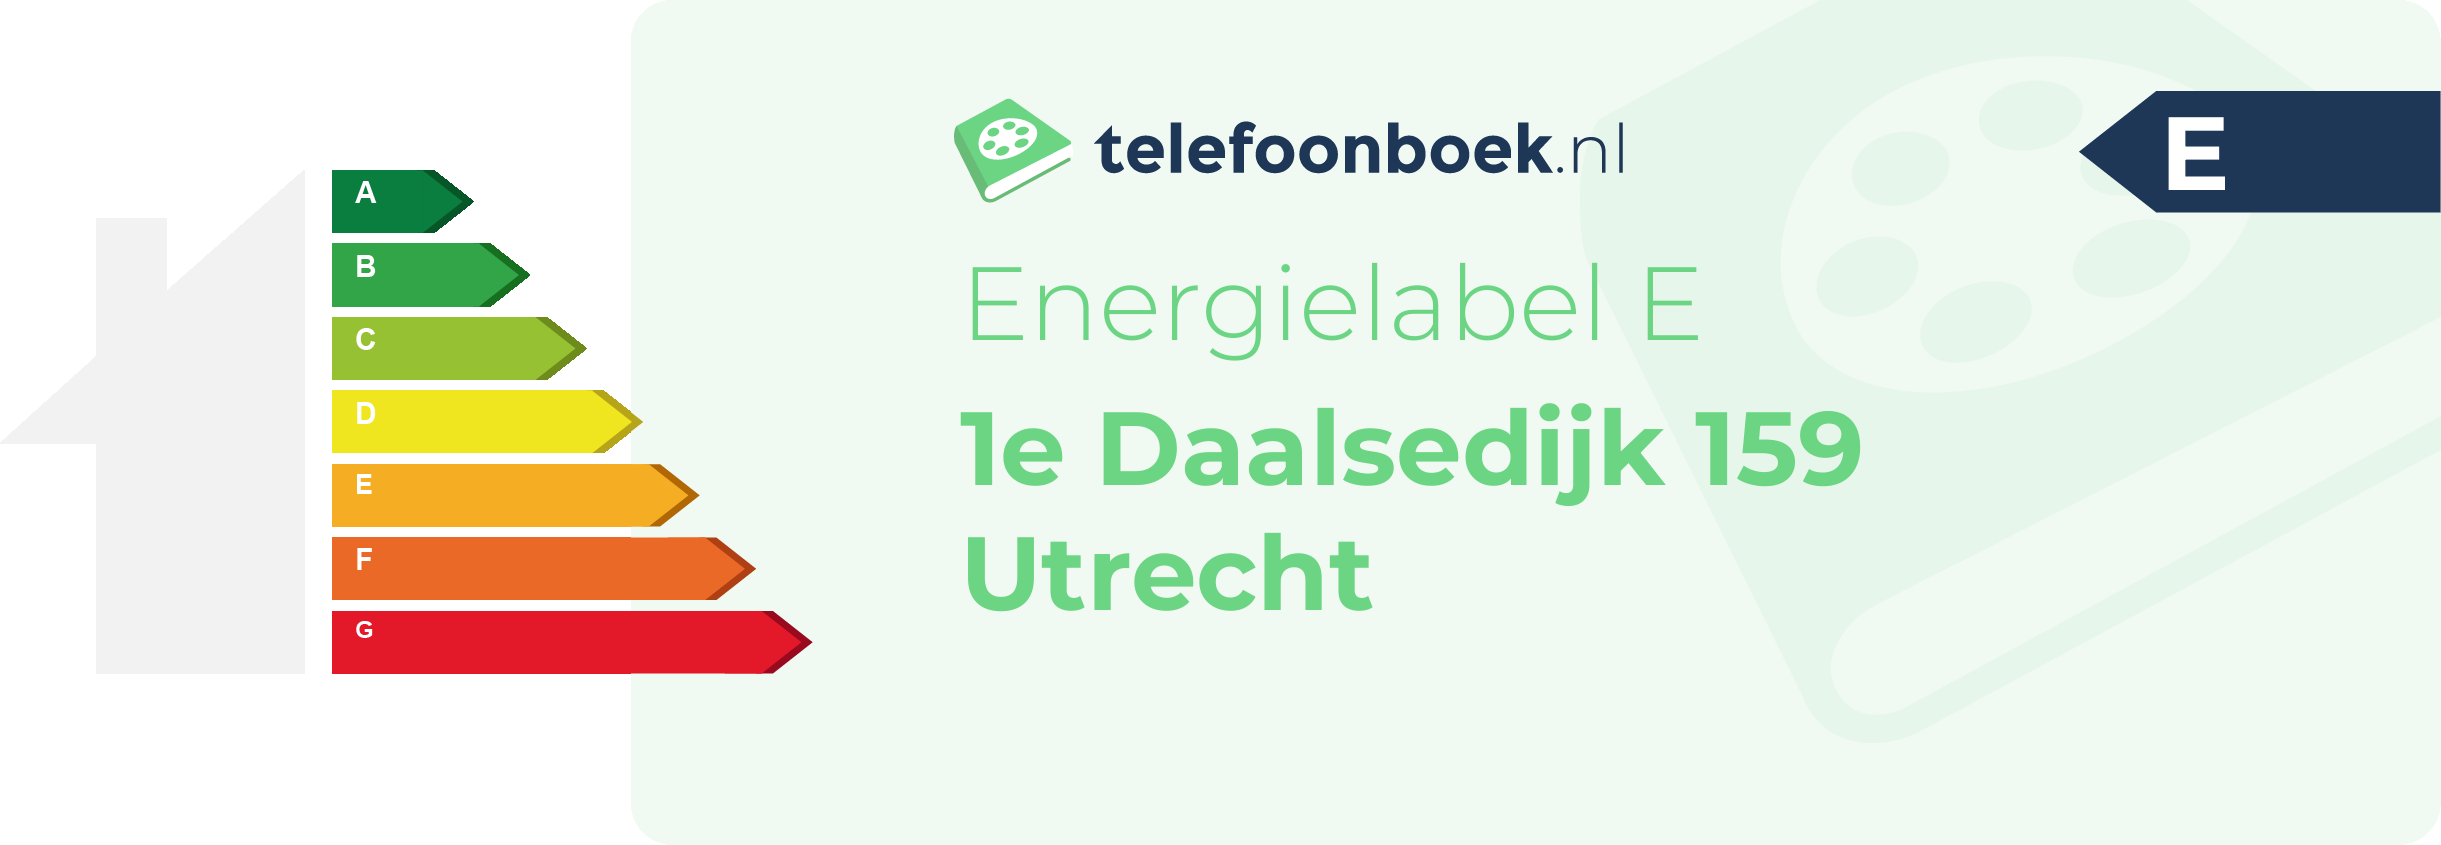 Energielabel 1e Daalsedijk 159 Utrecht